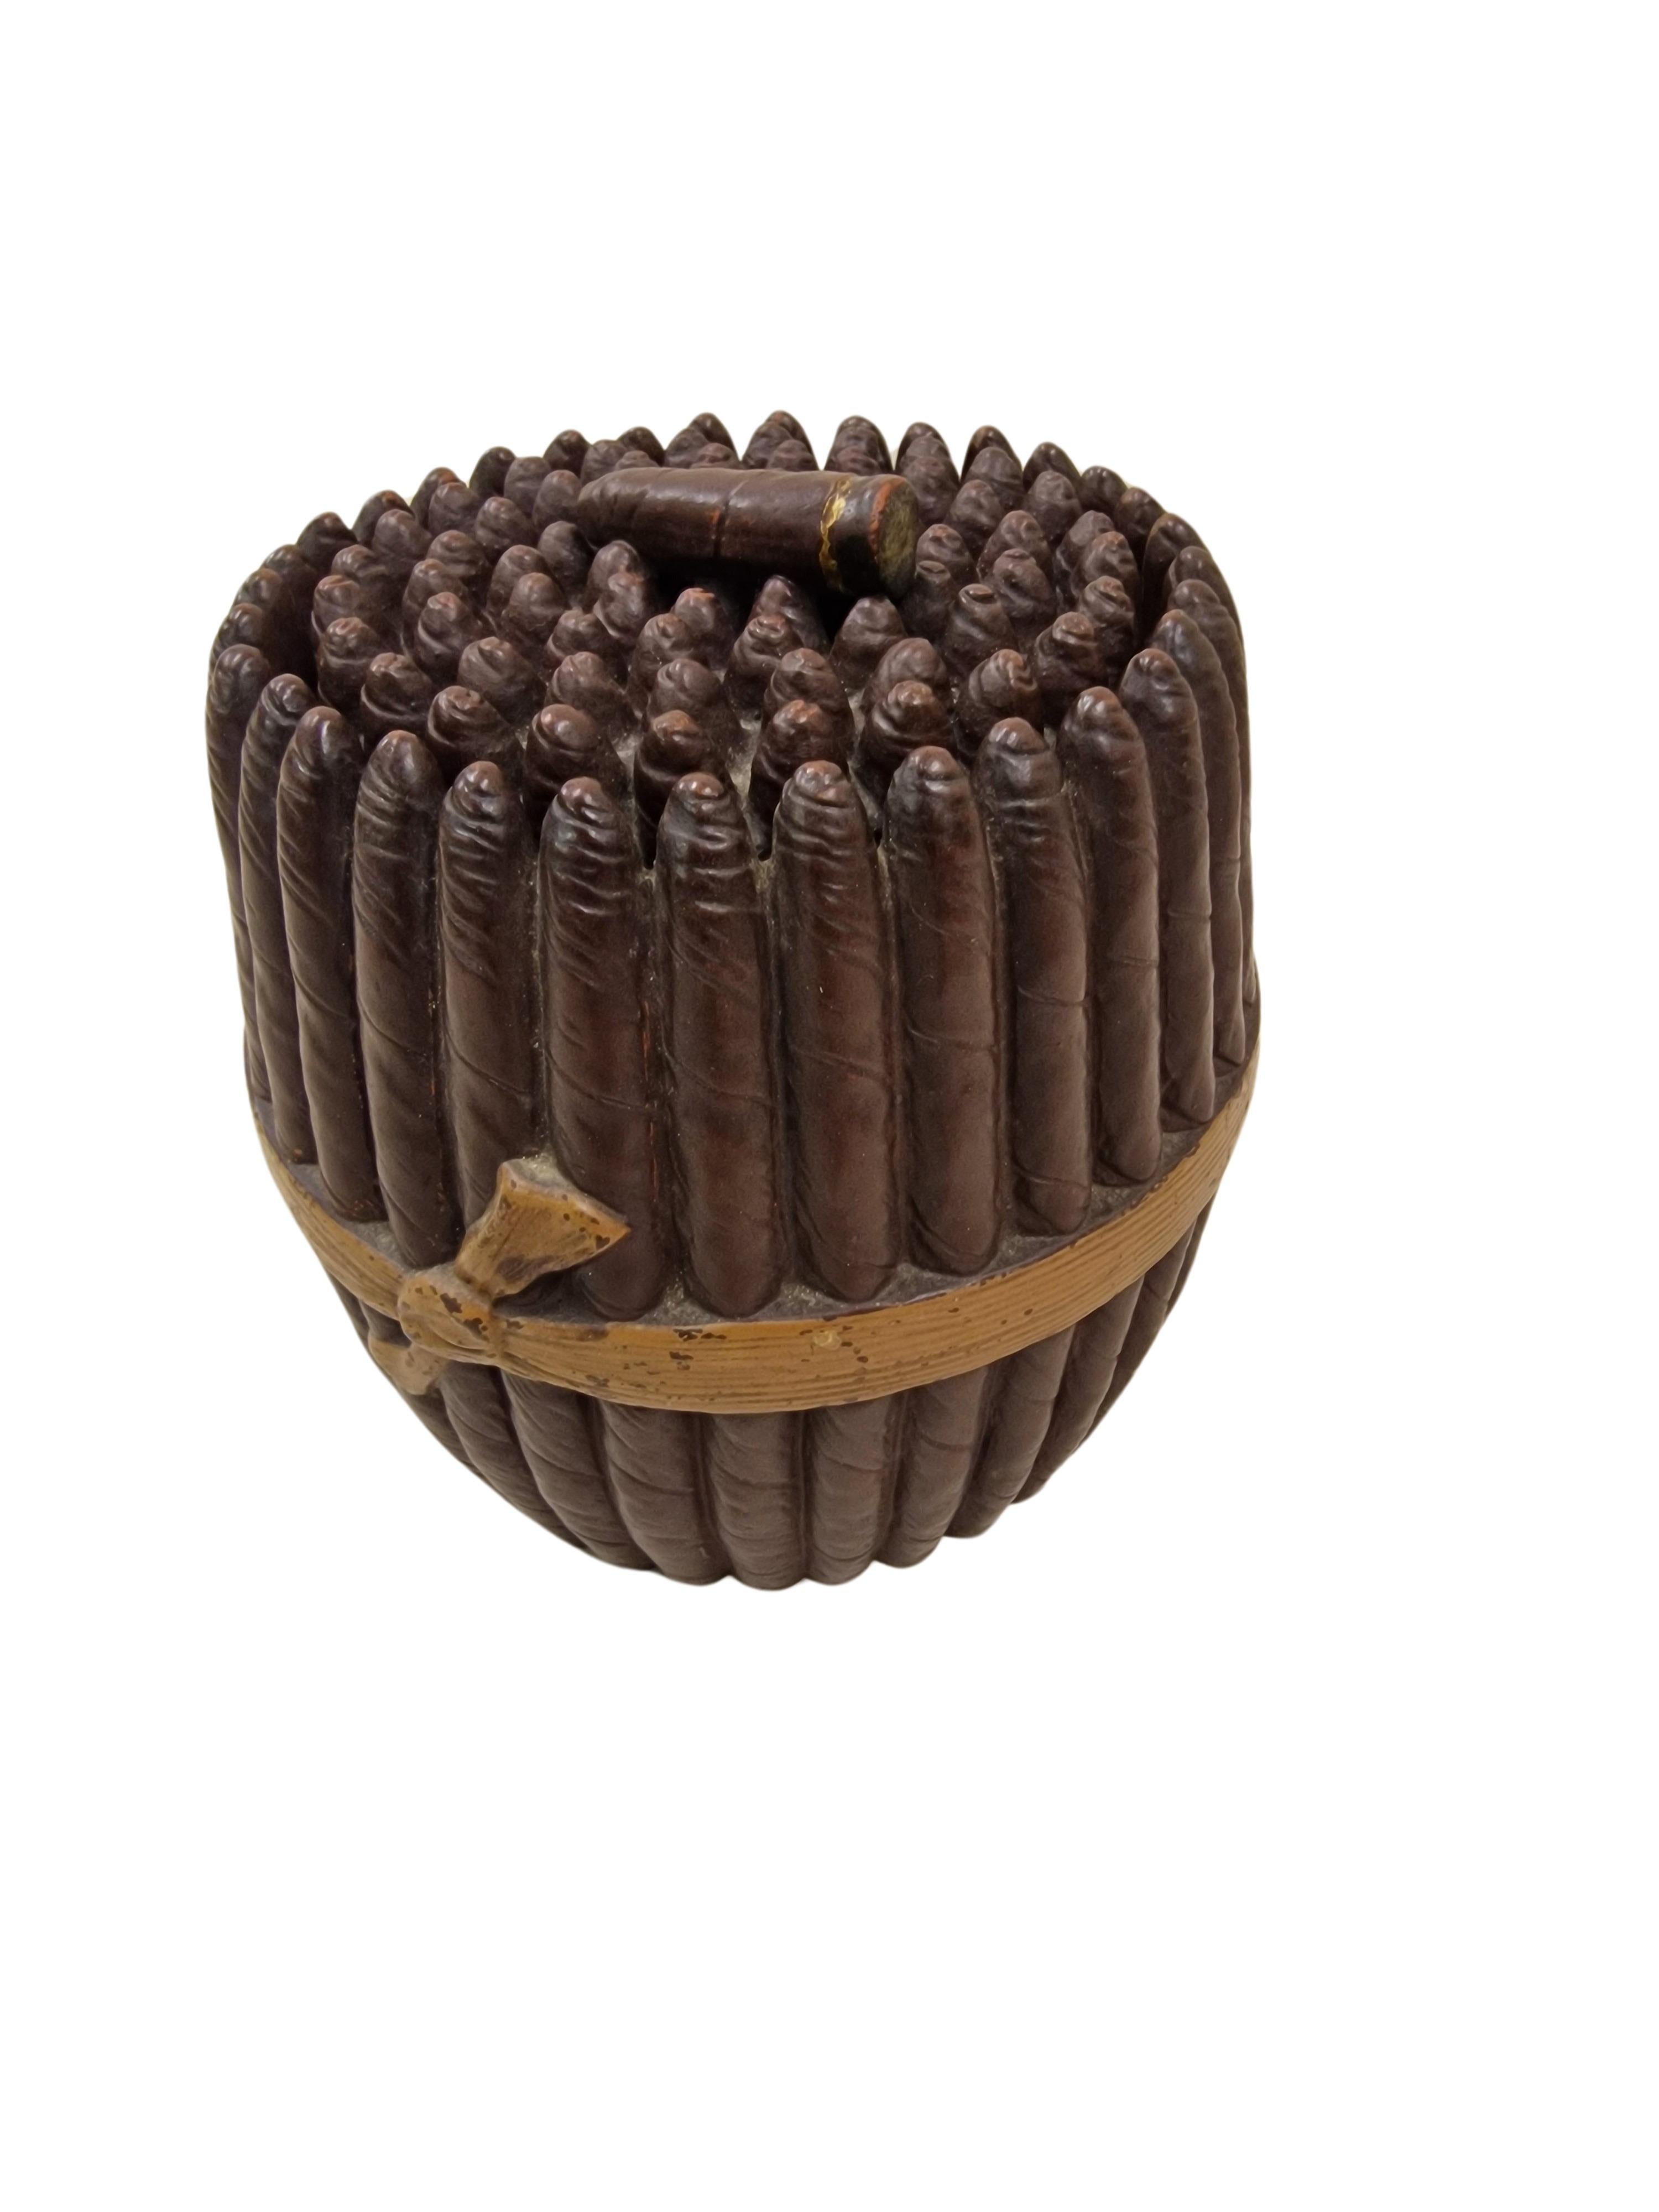 Une boîte à tabac vraiment spéciale, fabriquée en céramique vers 1890 - 1900, une pièce du début de l'Art nouveau.

La particularité de la boîte à tabac réside dans l'ancienneté de l'objet ainsi que dans son design extraordinaire.
On a l'impression